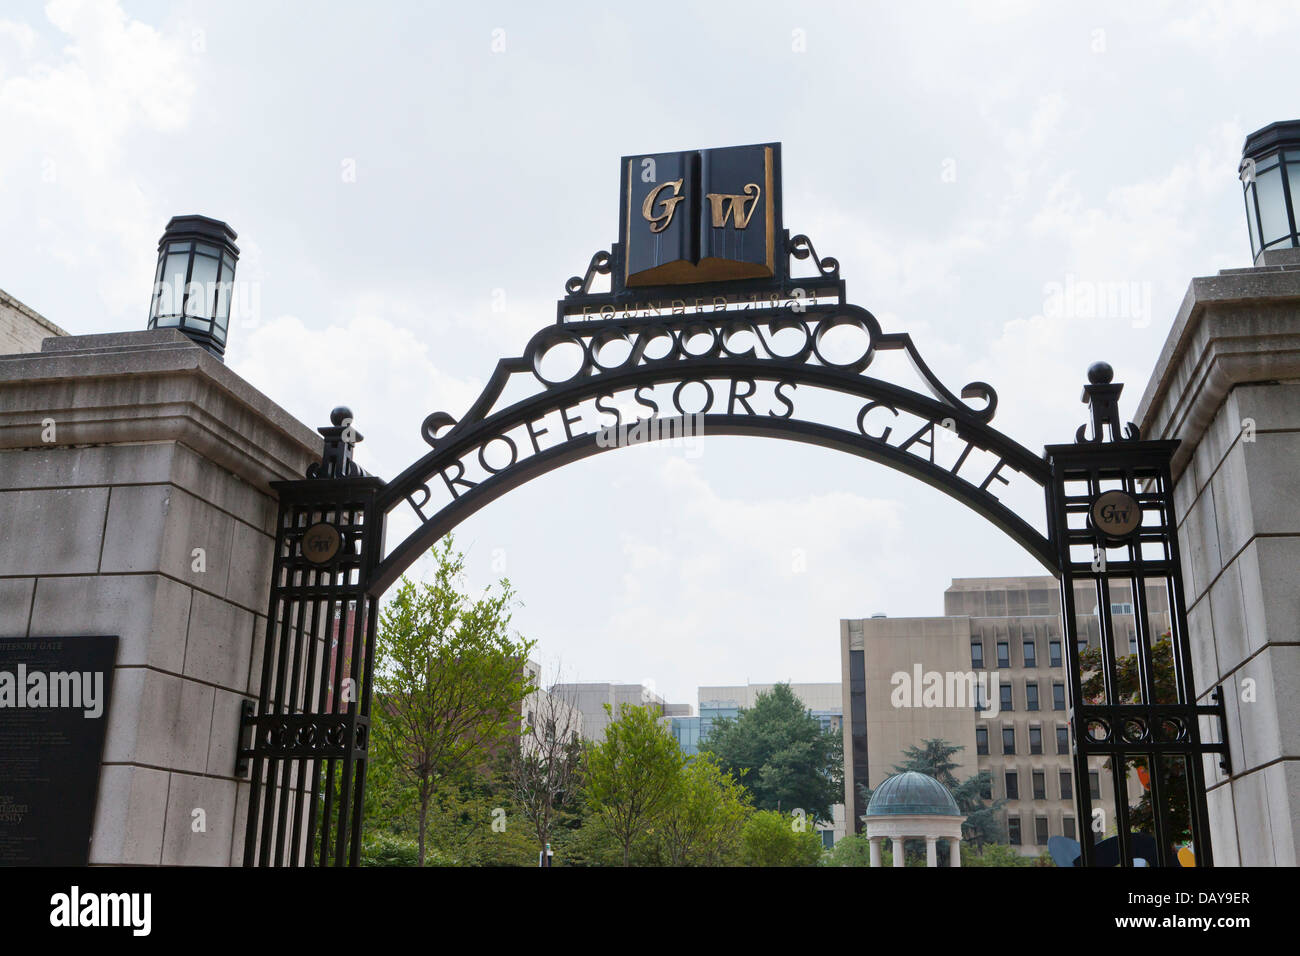 Professors Gate, George Washington University - Washington, DC Stock Photo